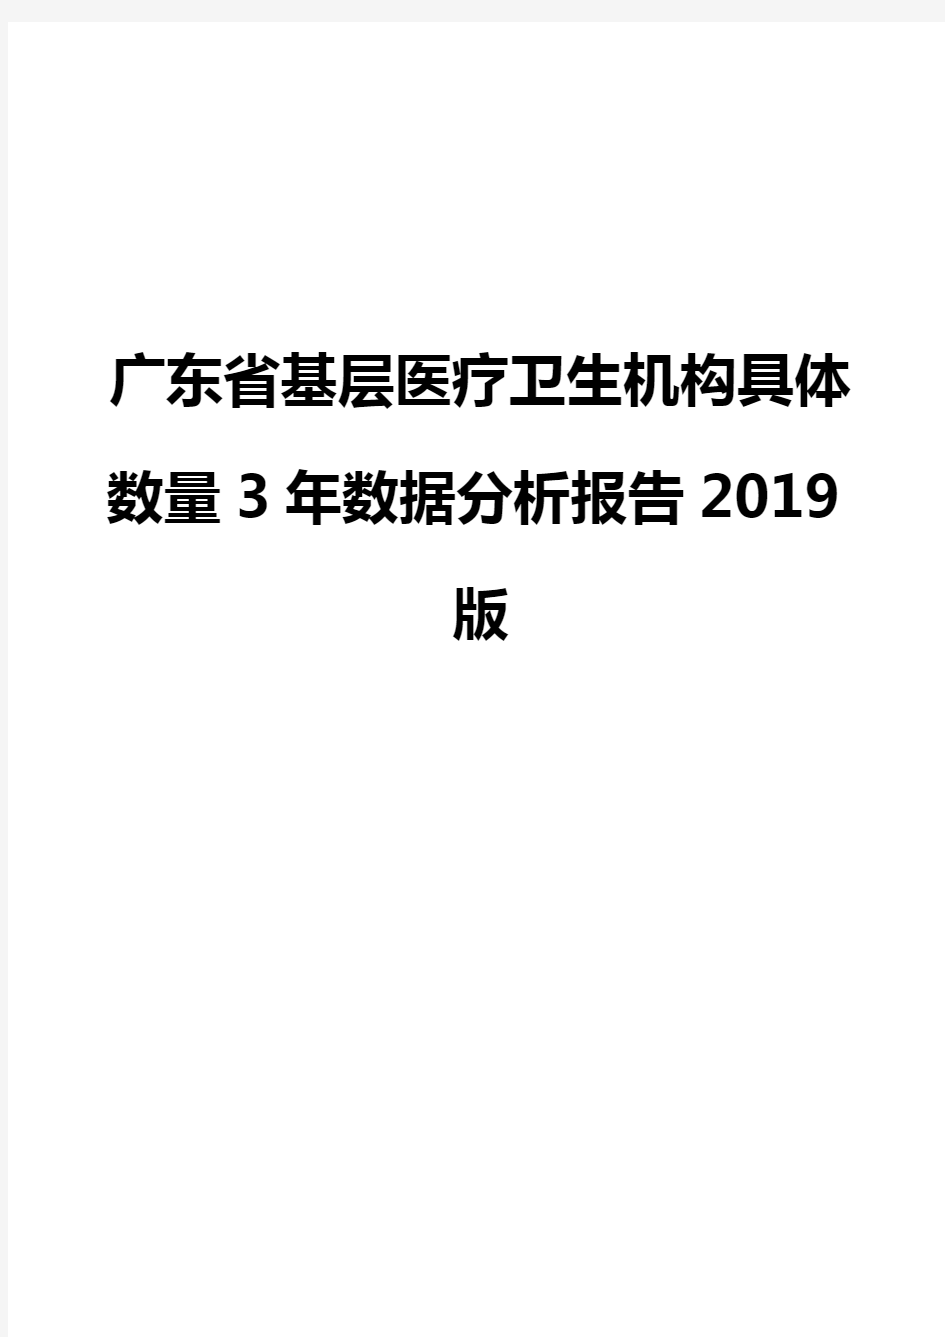 广东省基层医疗卫生机构具体数量3年数据分析报告2019版